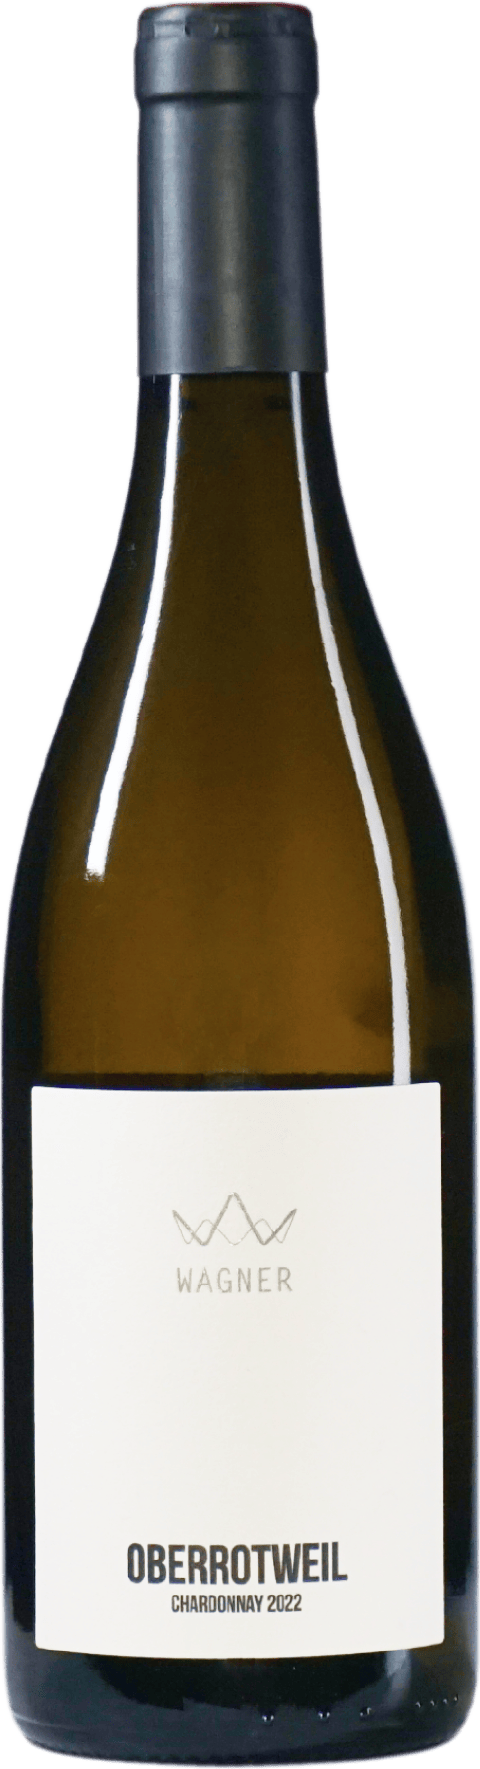 Chardonnay Oberrotweil